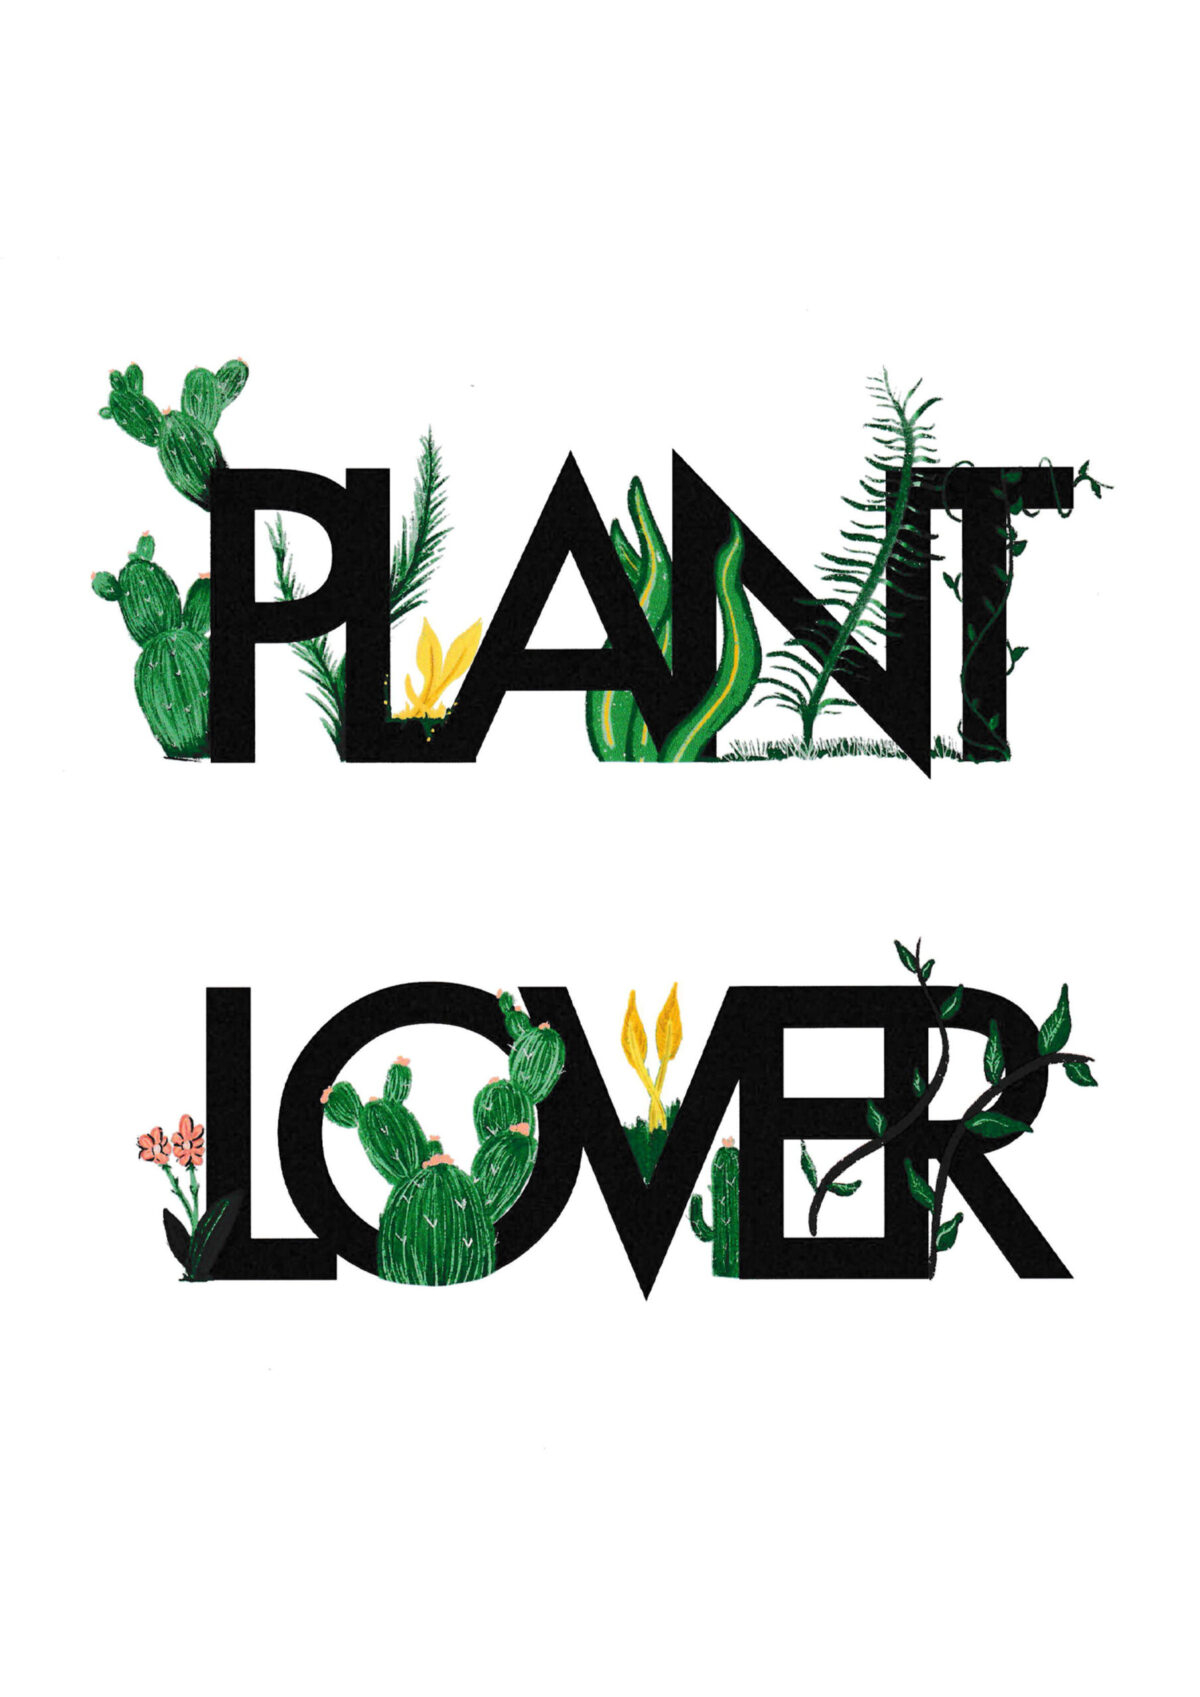 “Plant lover” “Plant lover” “Plant lover” 6